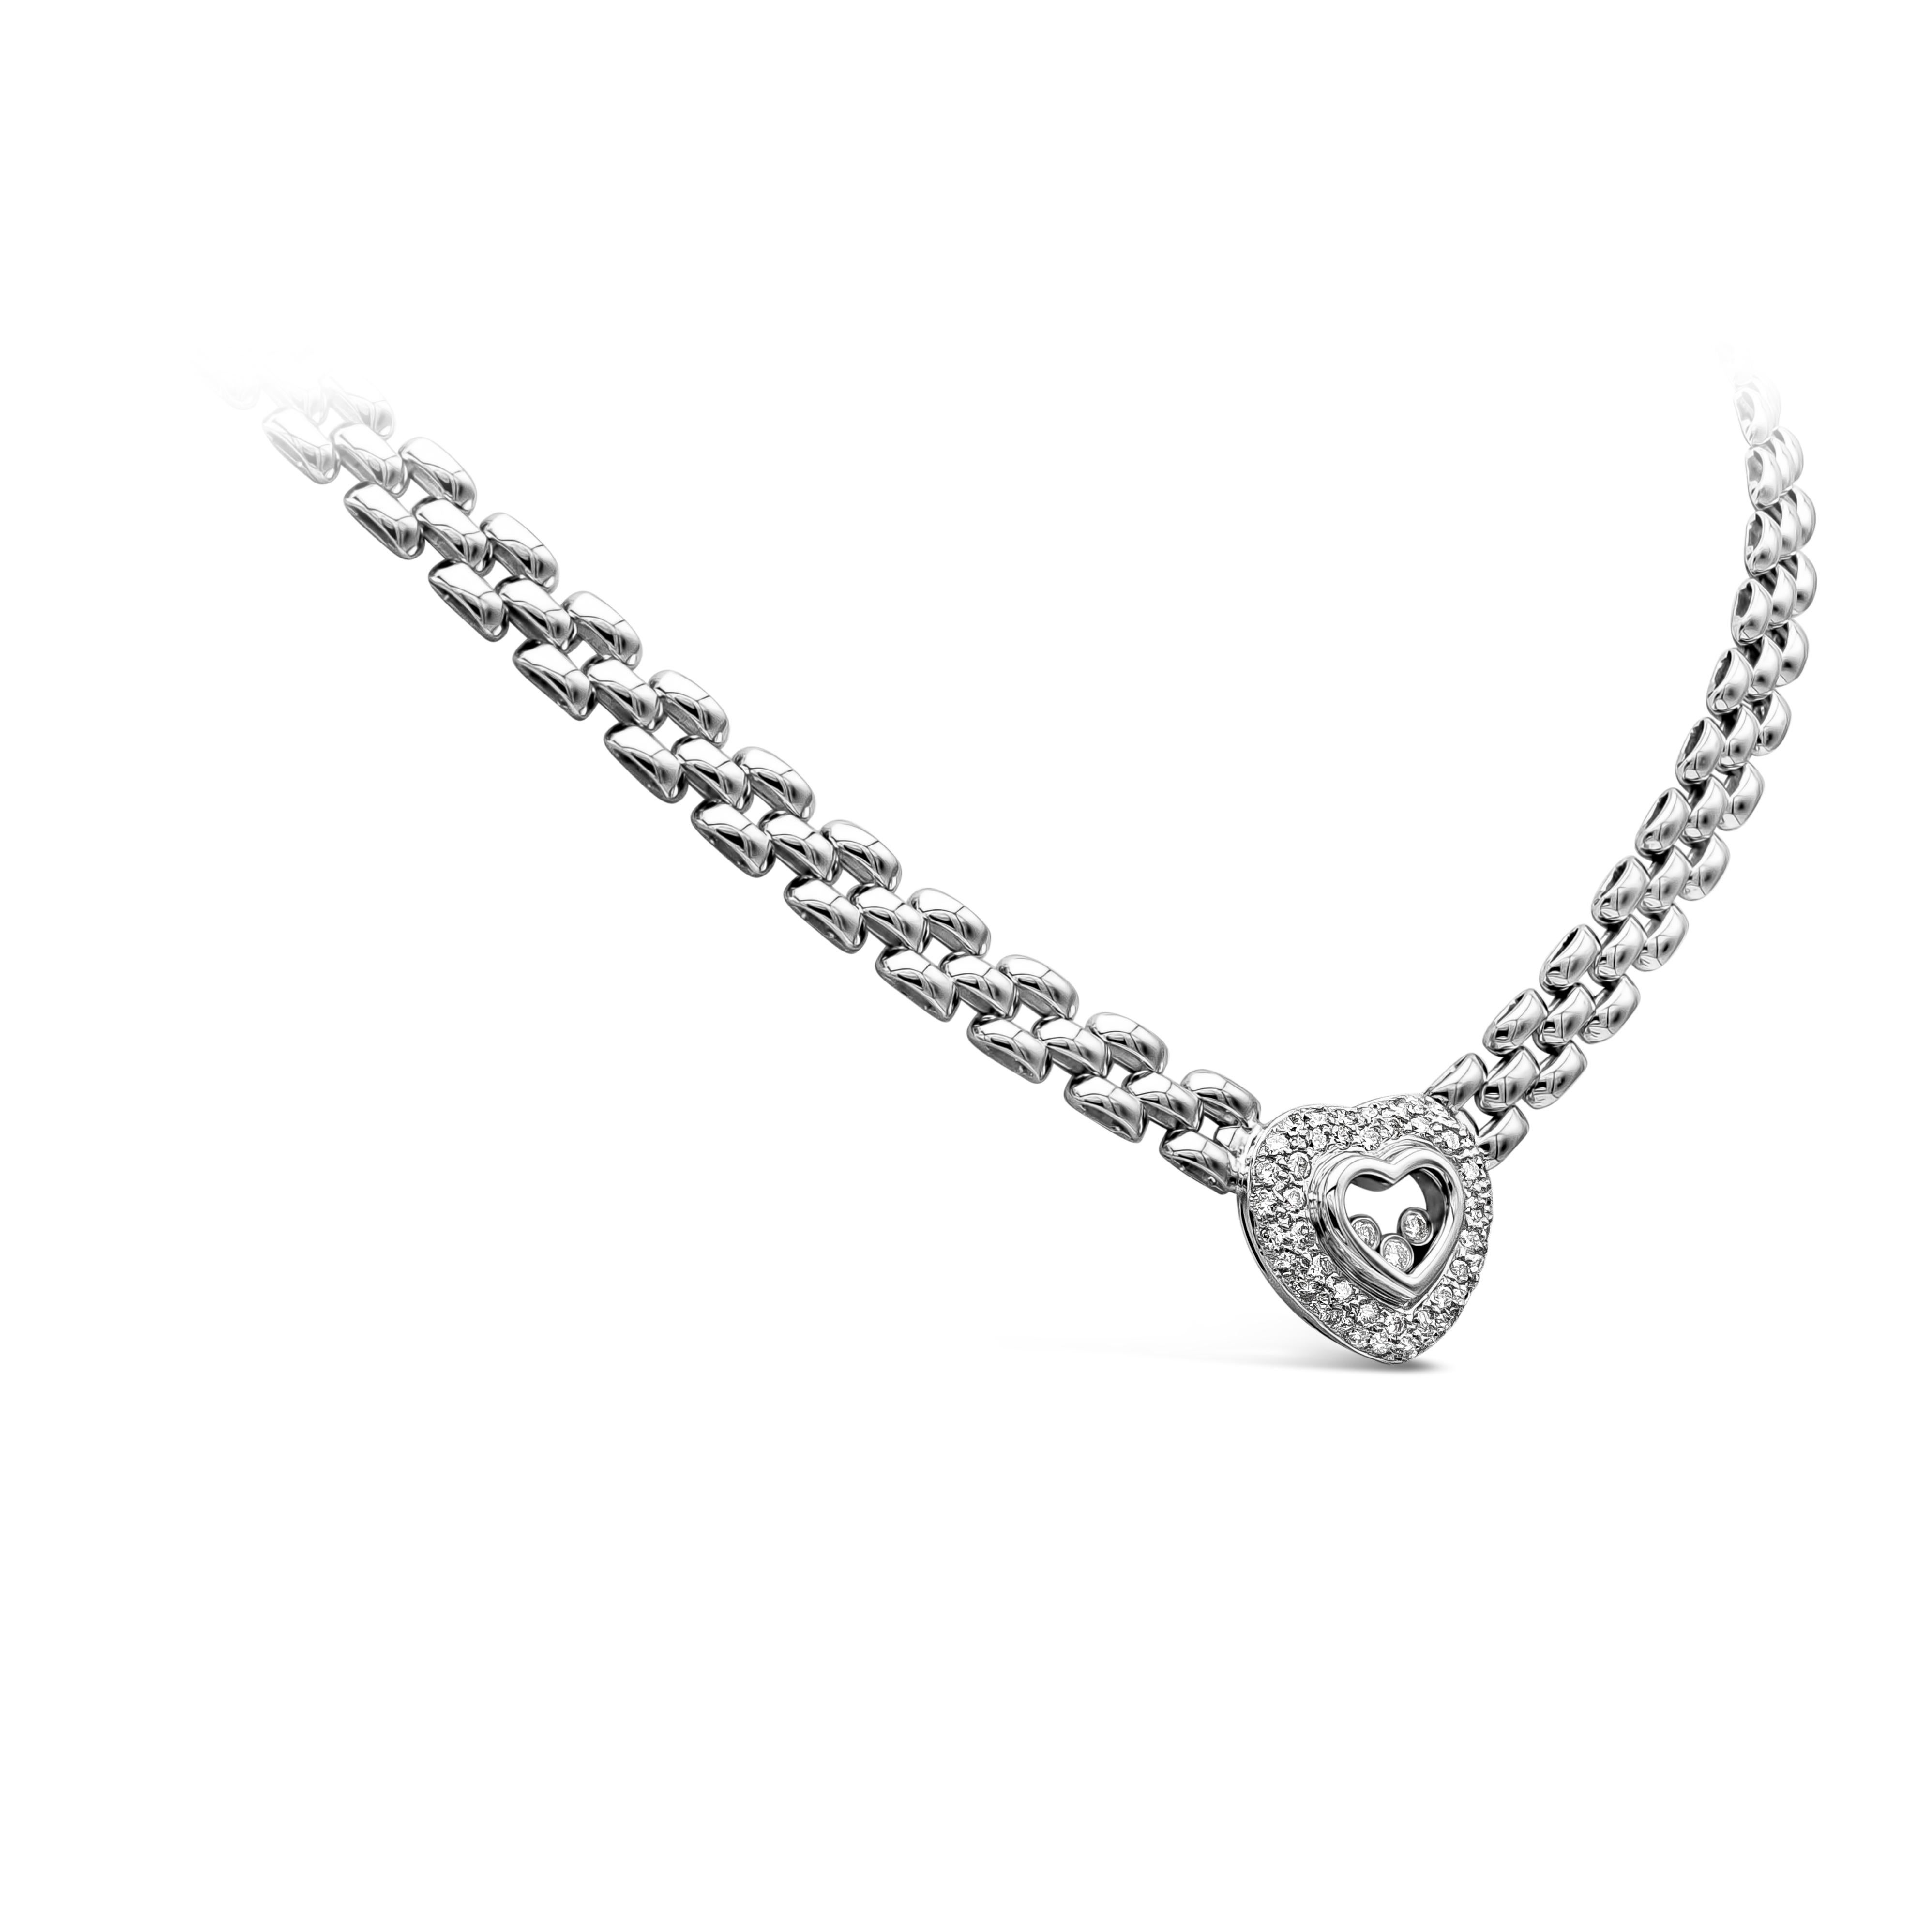 Ce collier est un pendentif en forme de cœur avec un verre au centre, serti de diamants ronds et entouré d'une rangée de diamants ronds en forme de halo. Les diamants pèsent 1.05 carat au total.